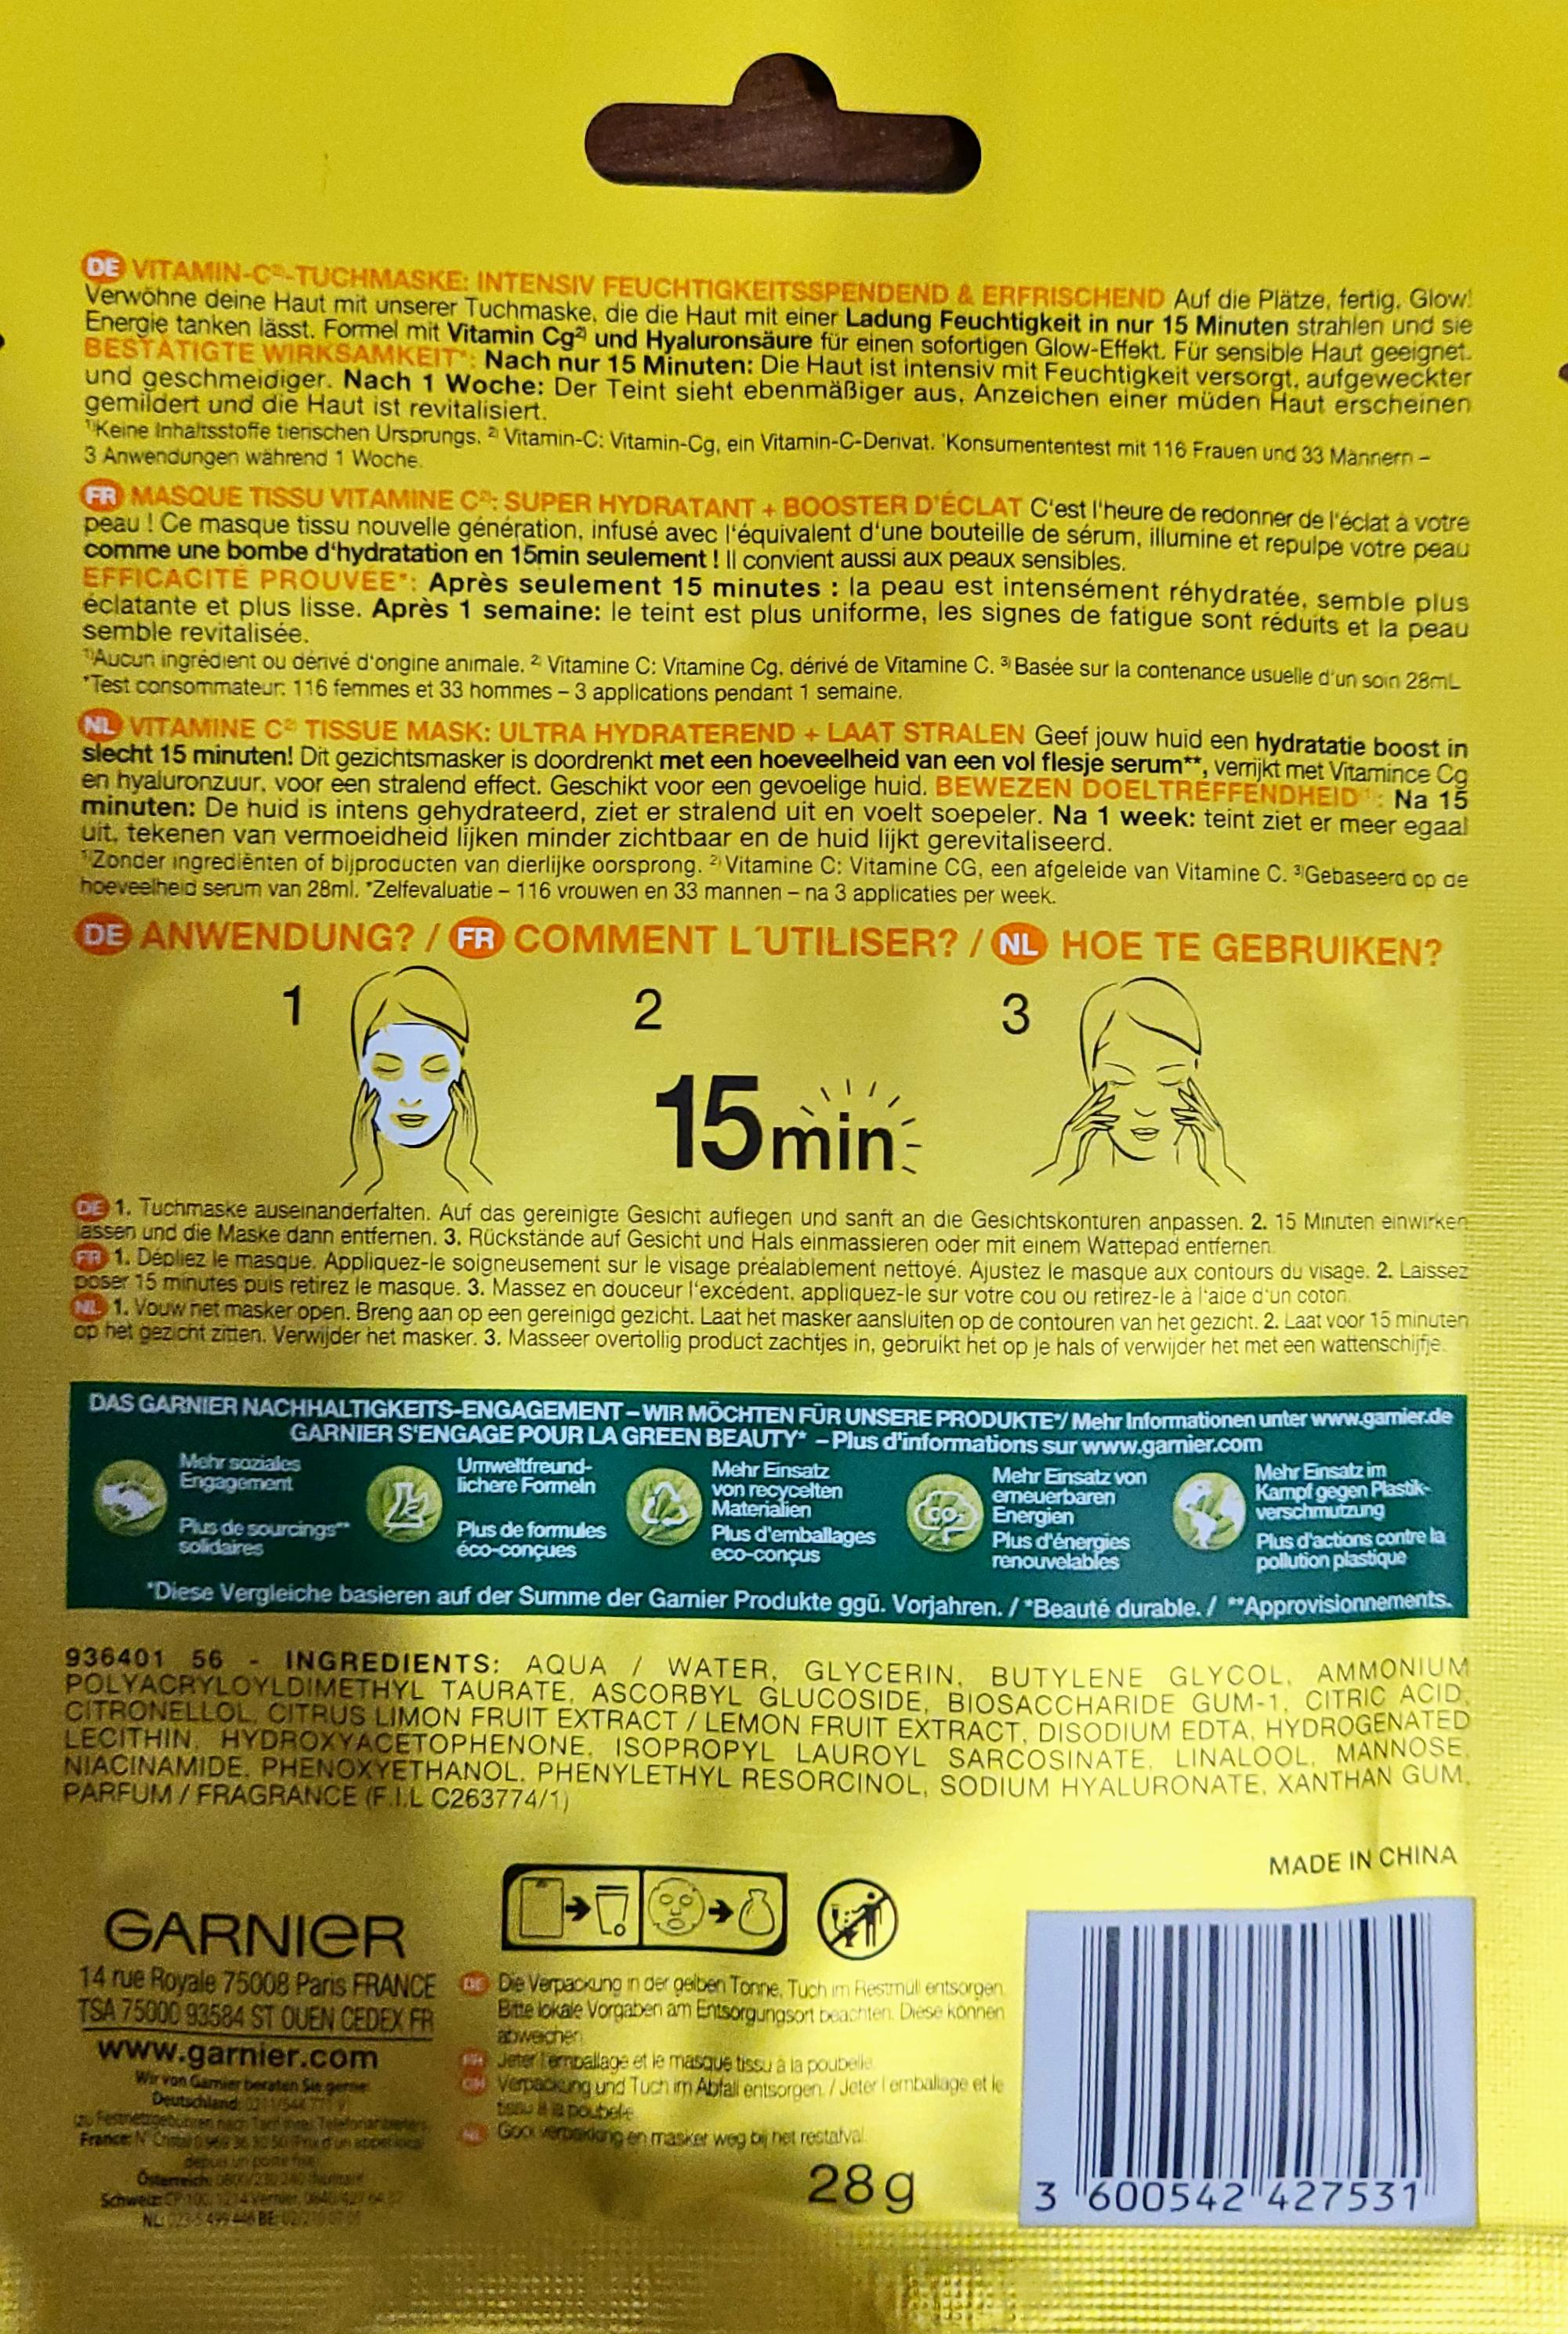 Garnier Skin Active Tuchmaske Vitamin C 1 Stück |  Lebensmittel-Sonderposten.de - Überhangware, top Marken,  Verpackungsschaden, kurz MHD Ware, Sonderposten, Körper- und  Haushaltshygiene